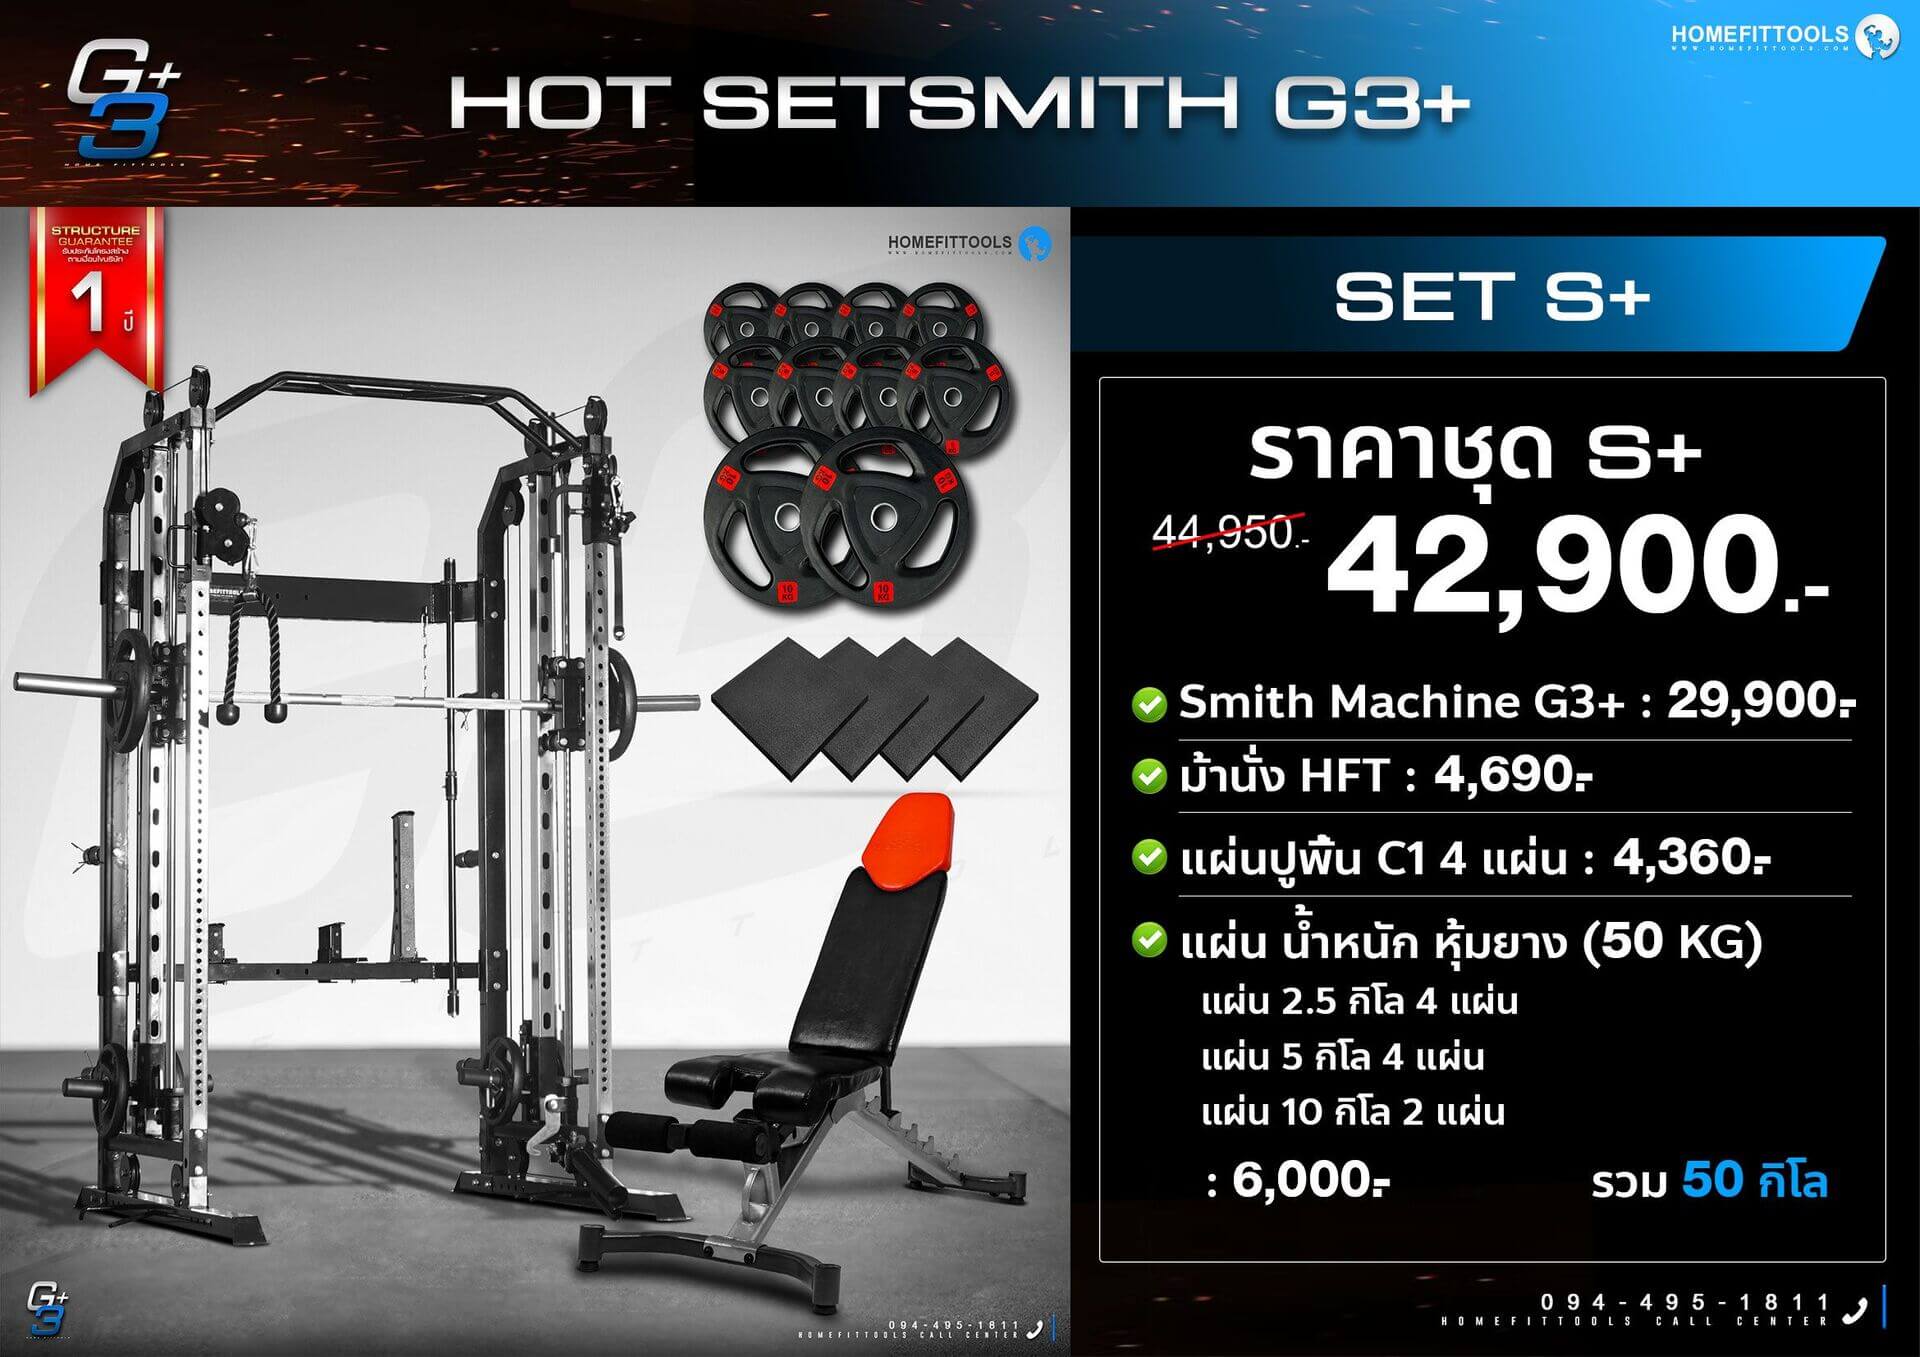 โปรโมชั่นแนะนำสมิทแมชชีน SMITH MACHINE G3+  Set S+